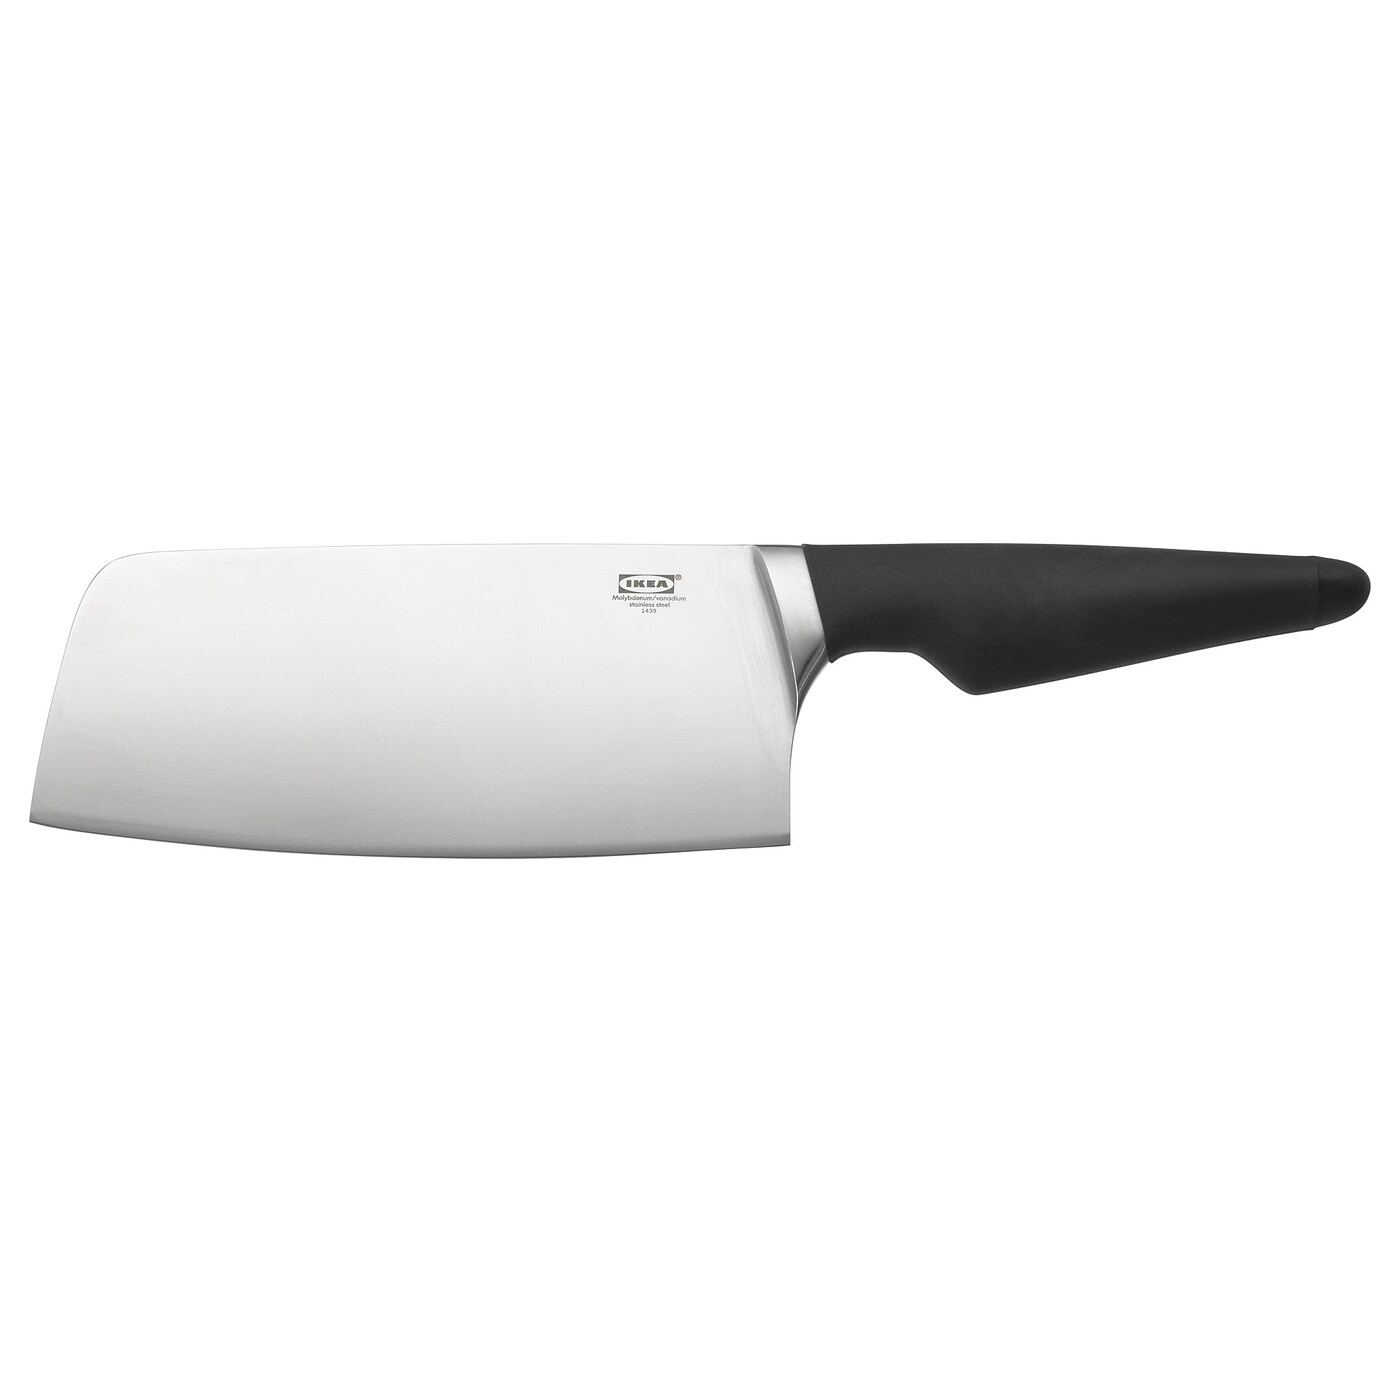 VÖRDA Китайский поварской нож, черный IKEA 6 5 дюймовый кованый нож для костей охотничий нож для рыбалки мясного мяса мясника нож для чистки овощей нарезки рыбы инструменты для гот